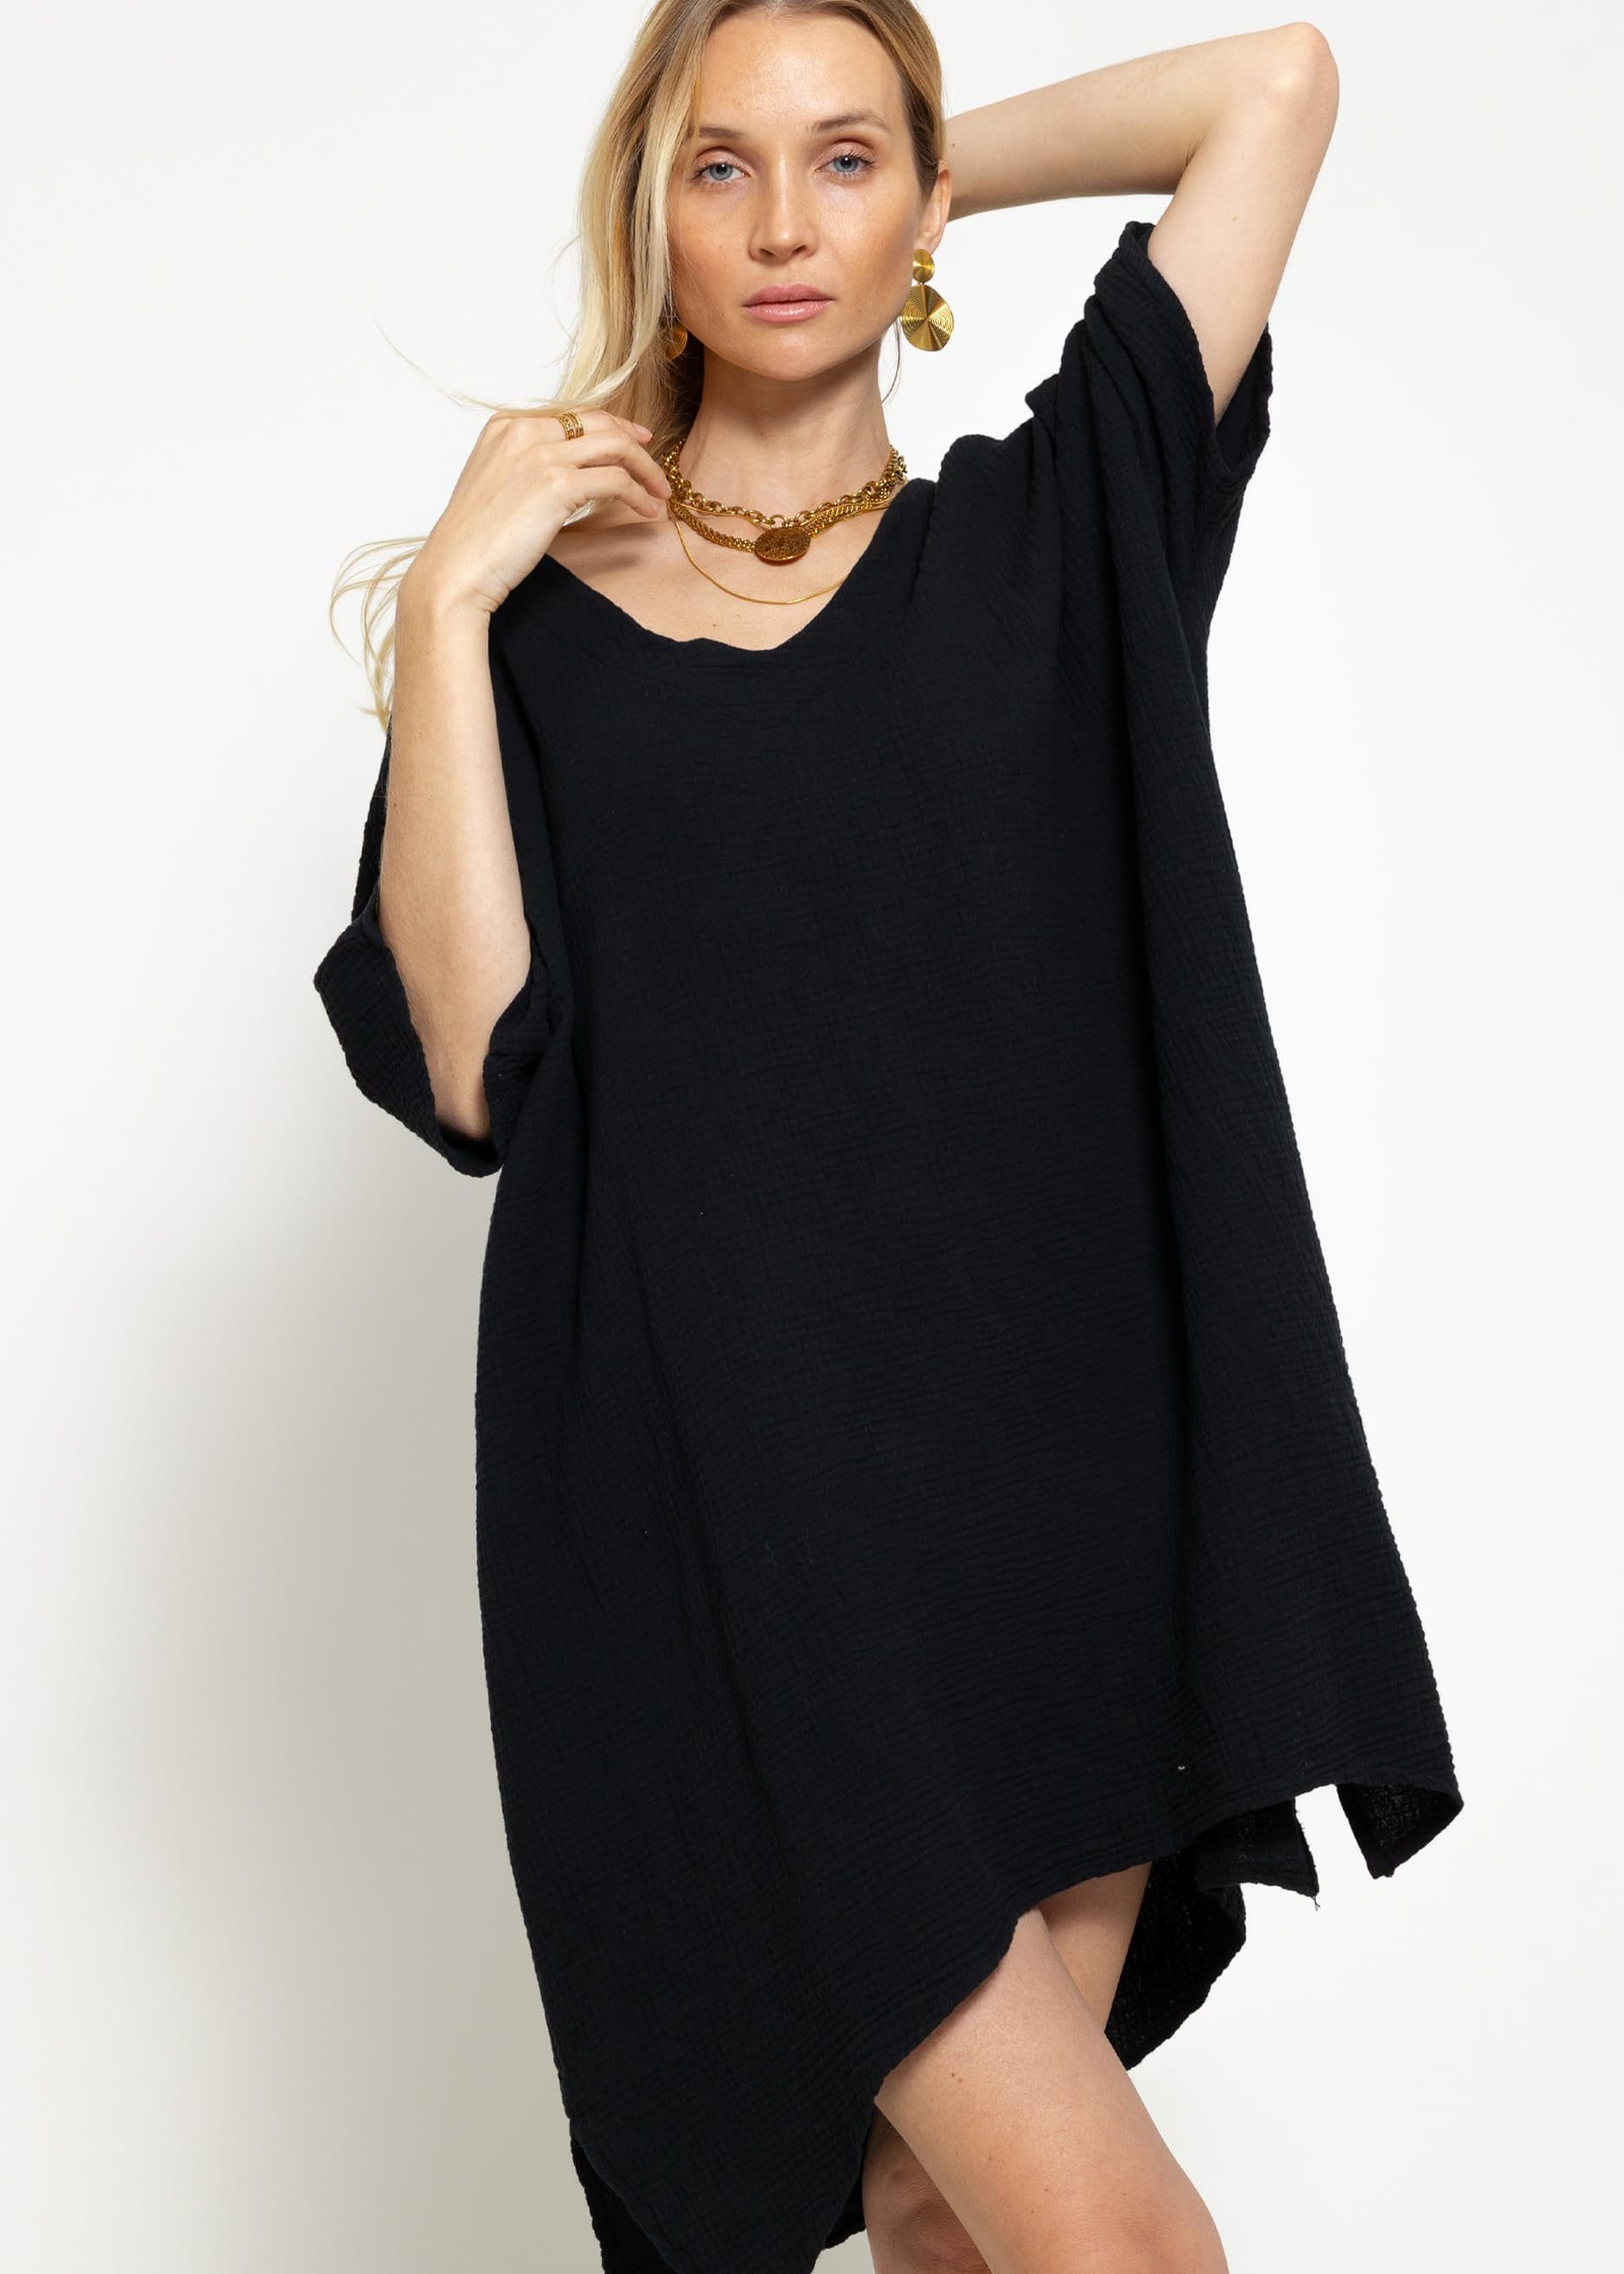 SASSYCLASSY Tunikakleid Musselin Tunika mit V-Ausschnitt 100 % Baumwoll Kleid mit Seitenschlitzen und einer Oversize Passform